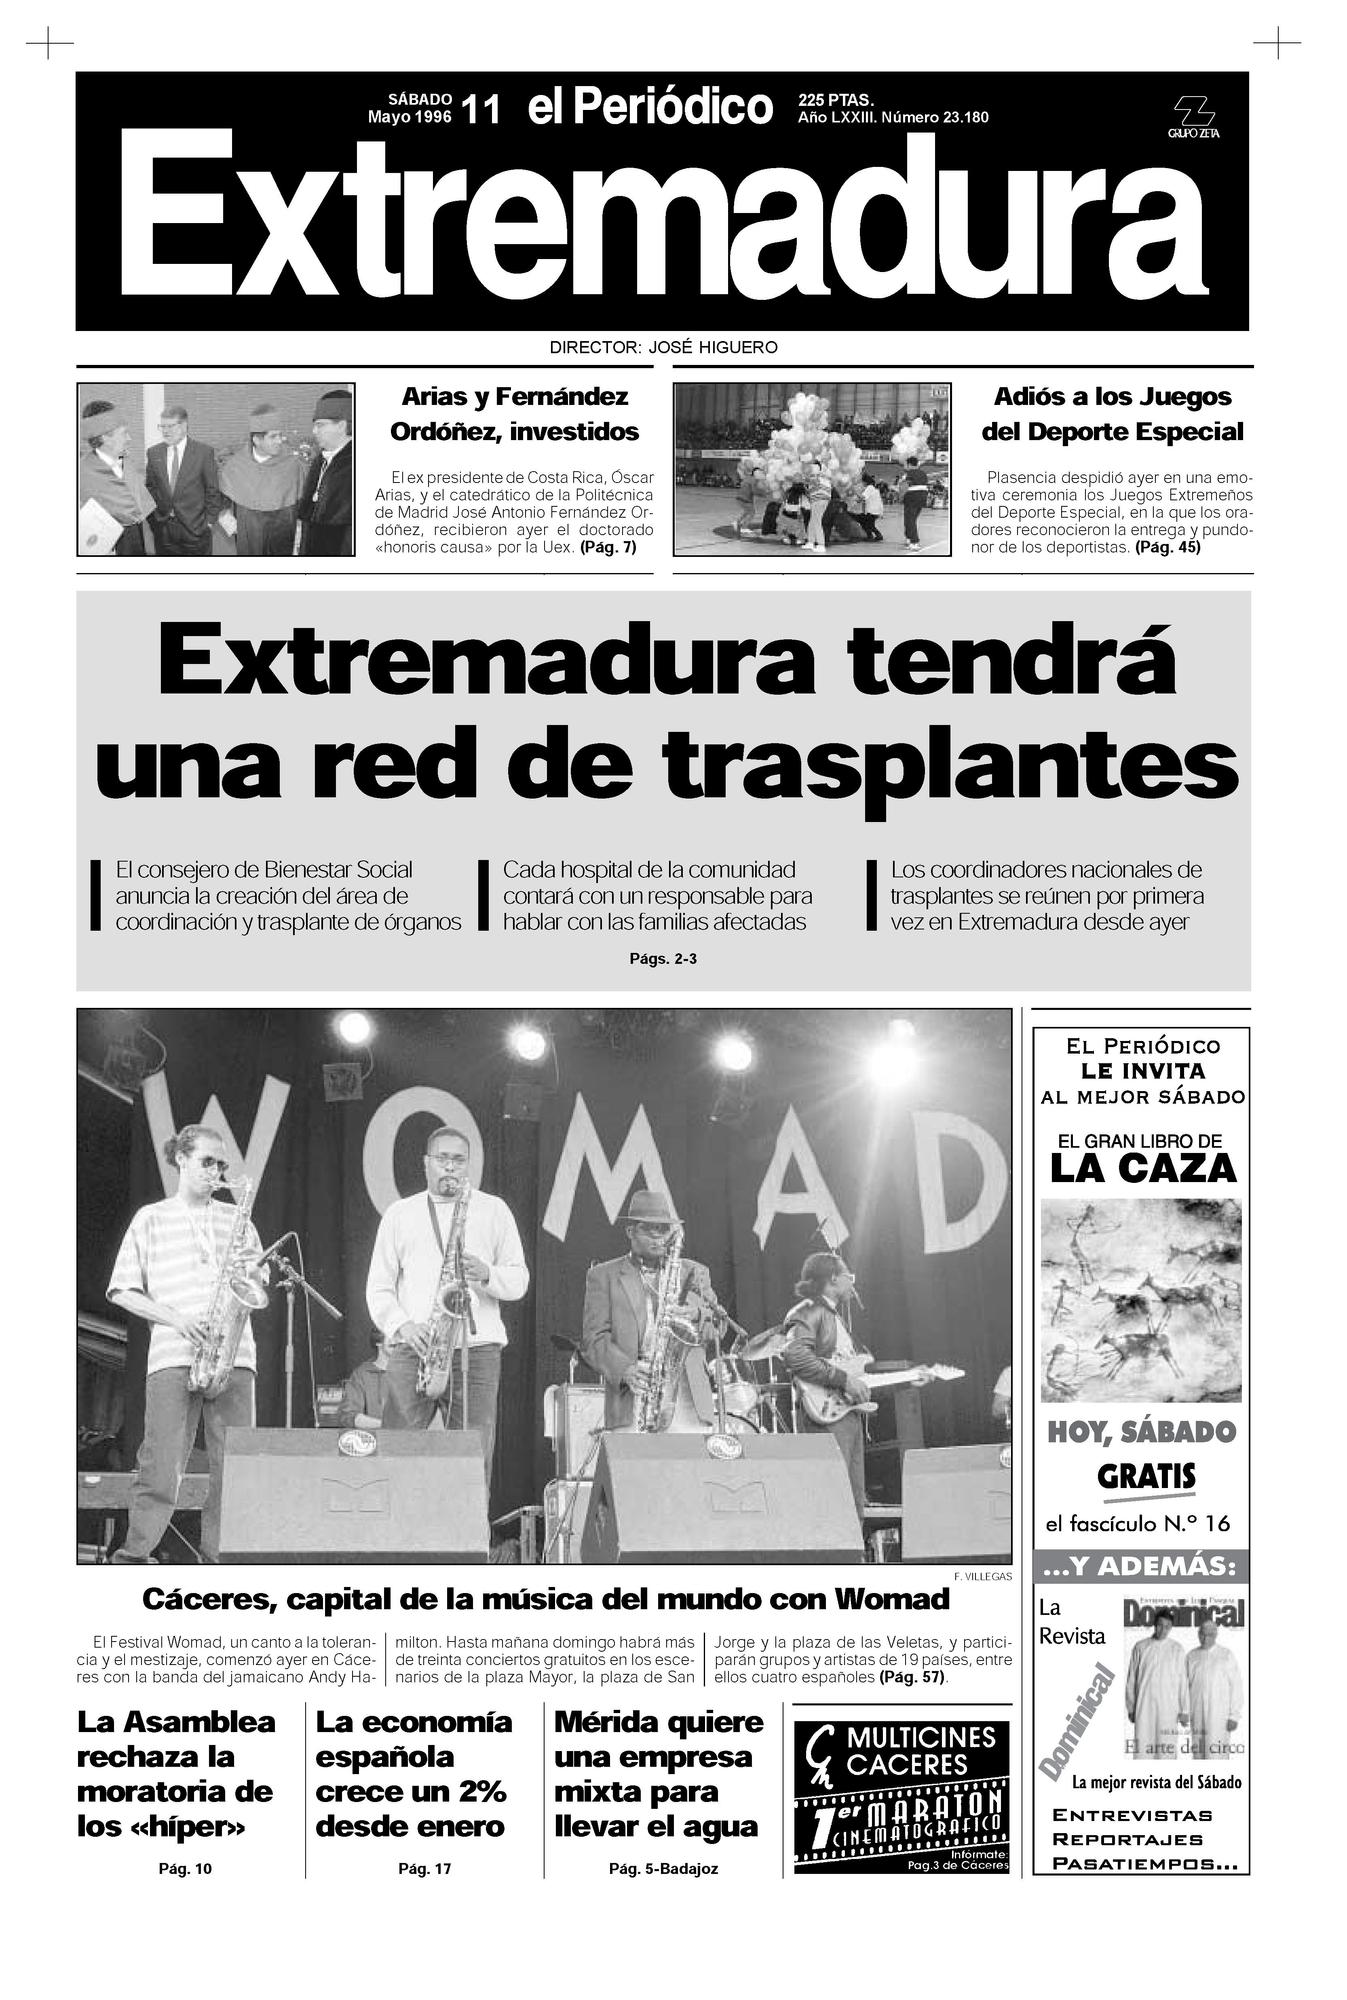 Portada de El Periódico Extremadura el 11 de mayo de 1996.